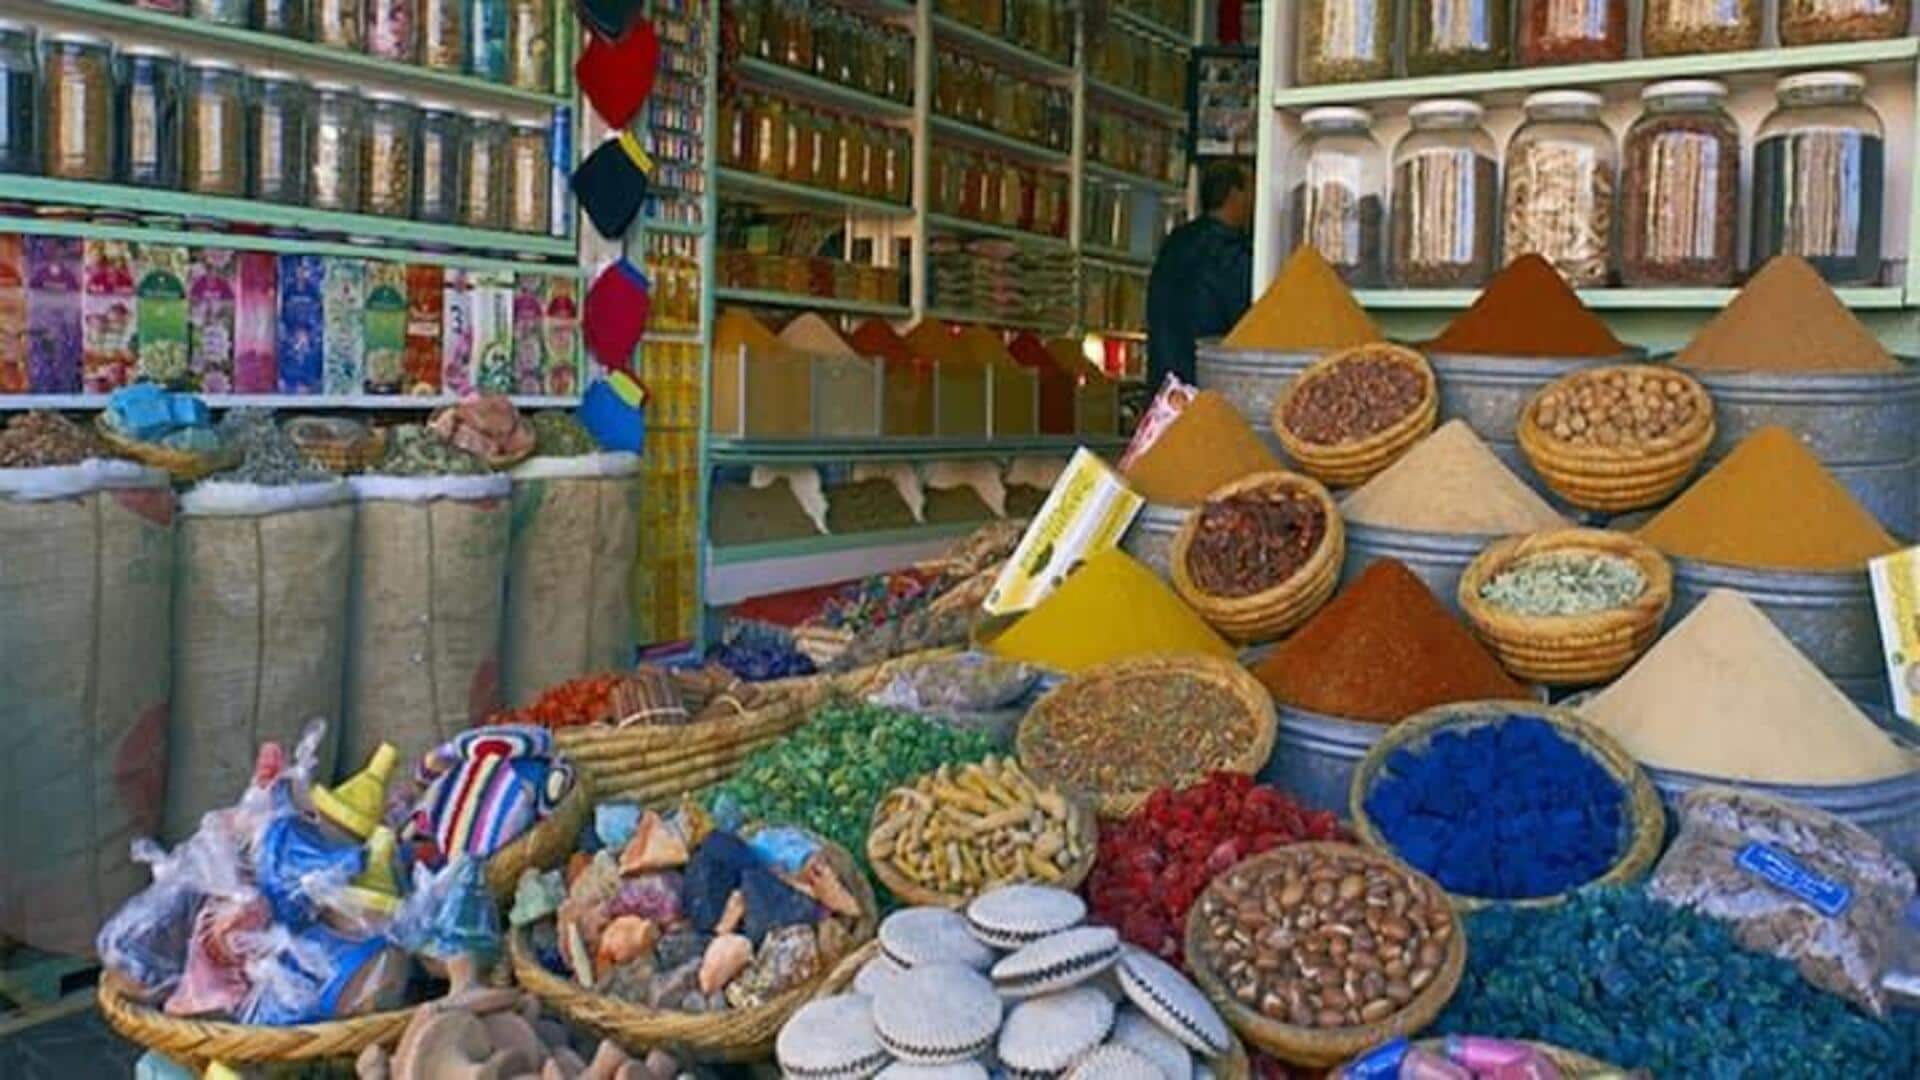 Saat Berlibur Di Marrakesh, Jangan Lupa Untuk Menjelajahi Spice Souk